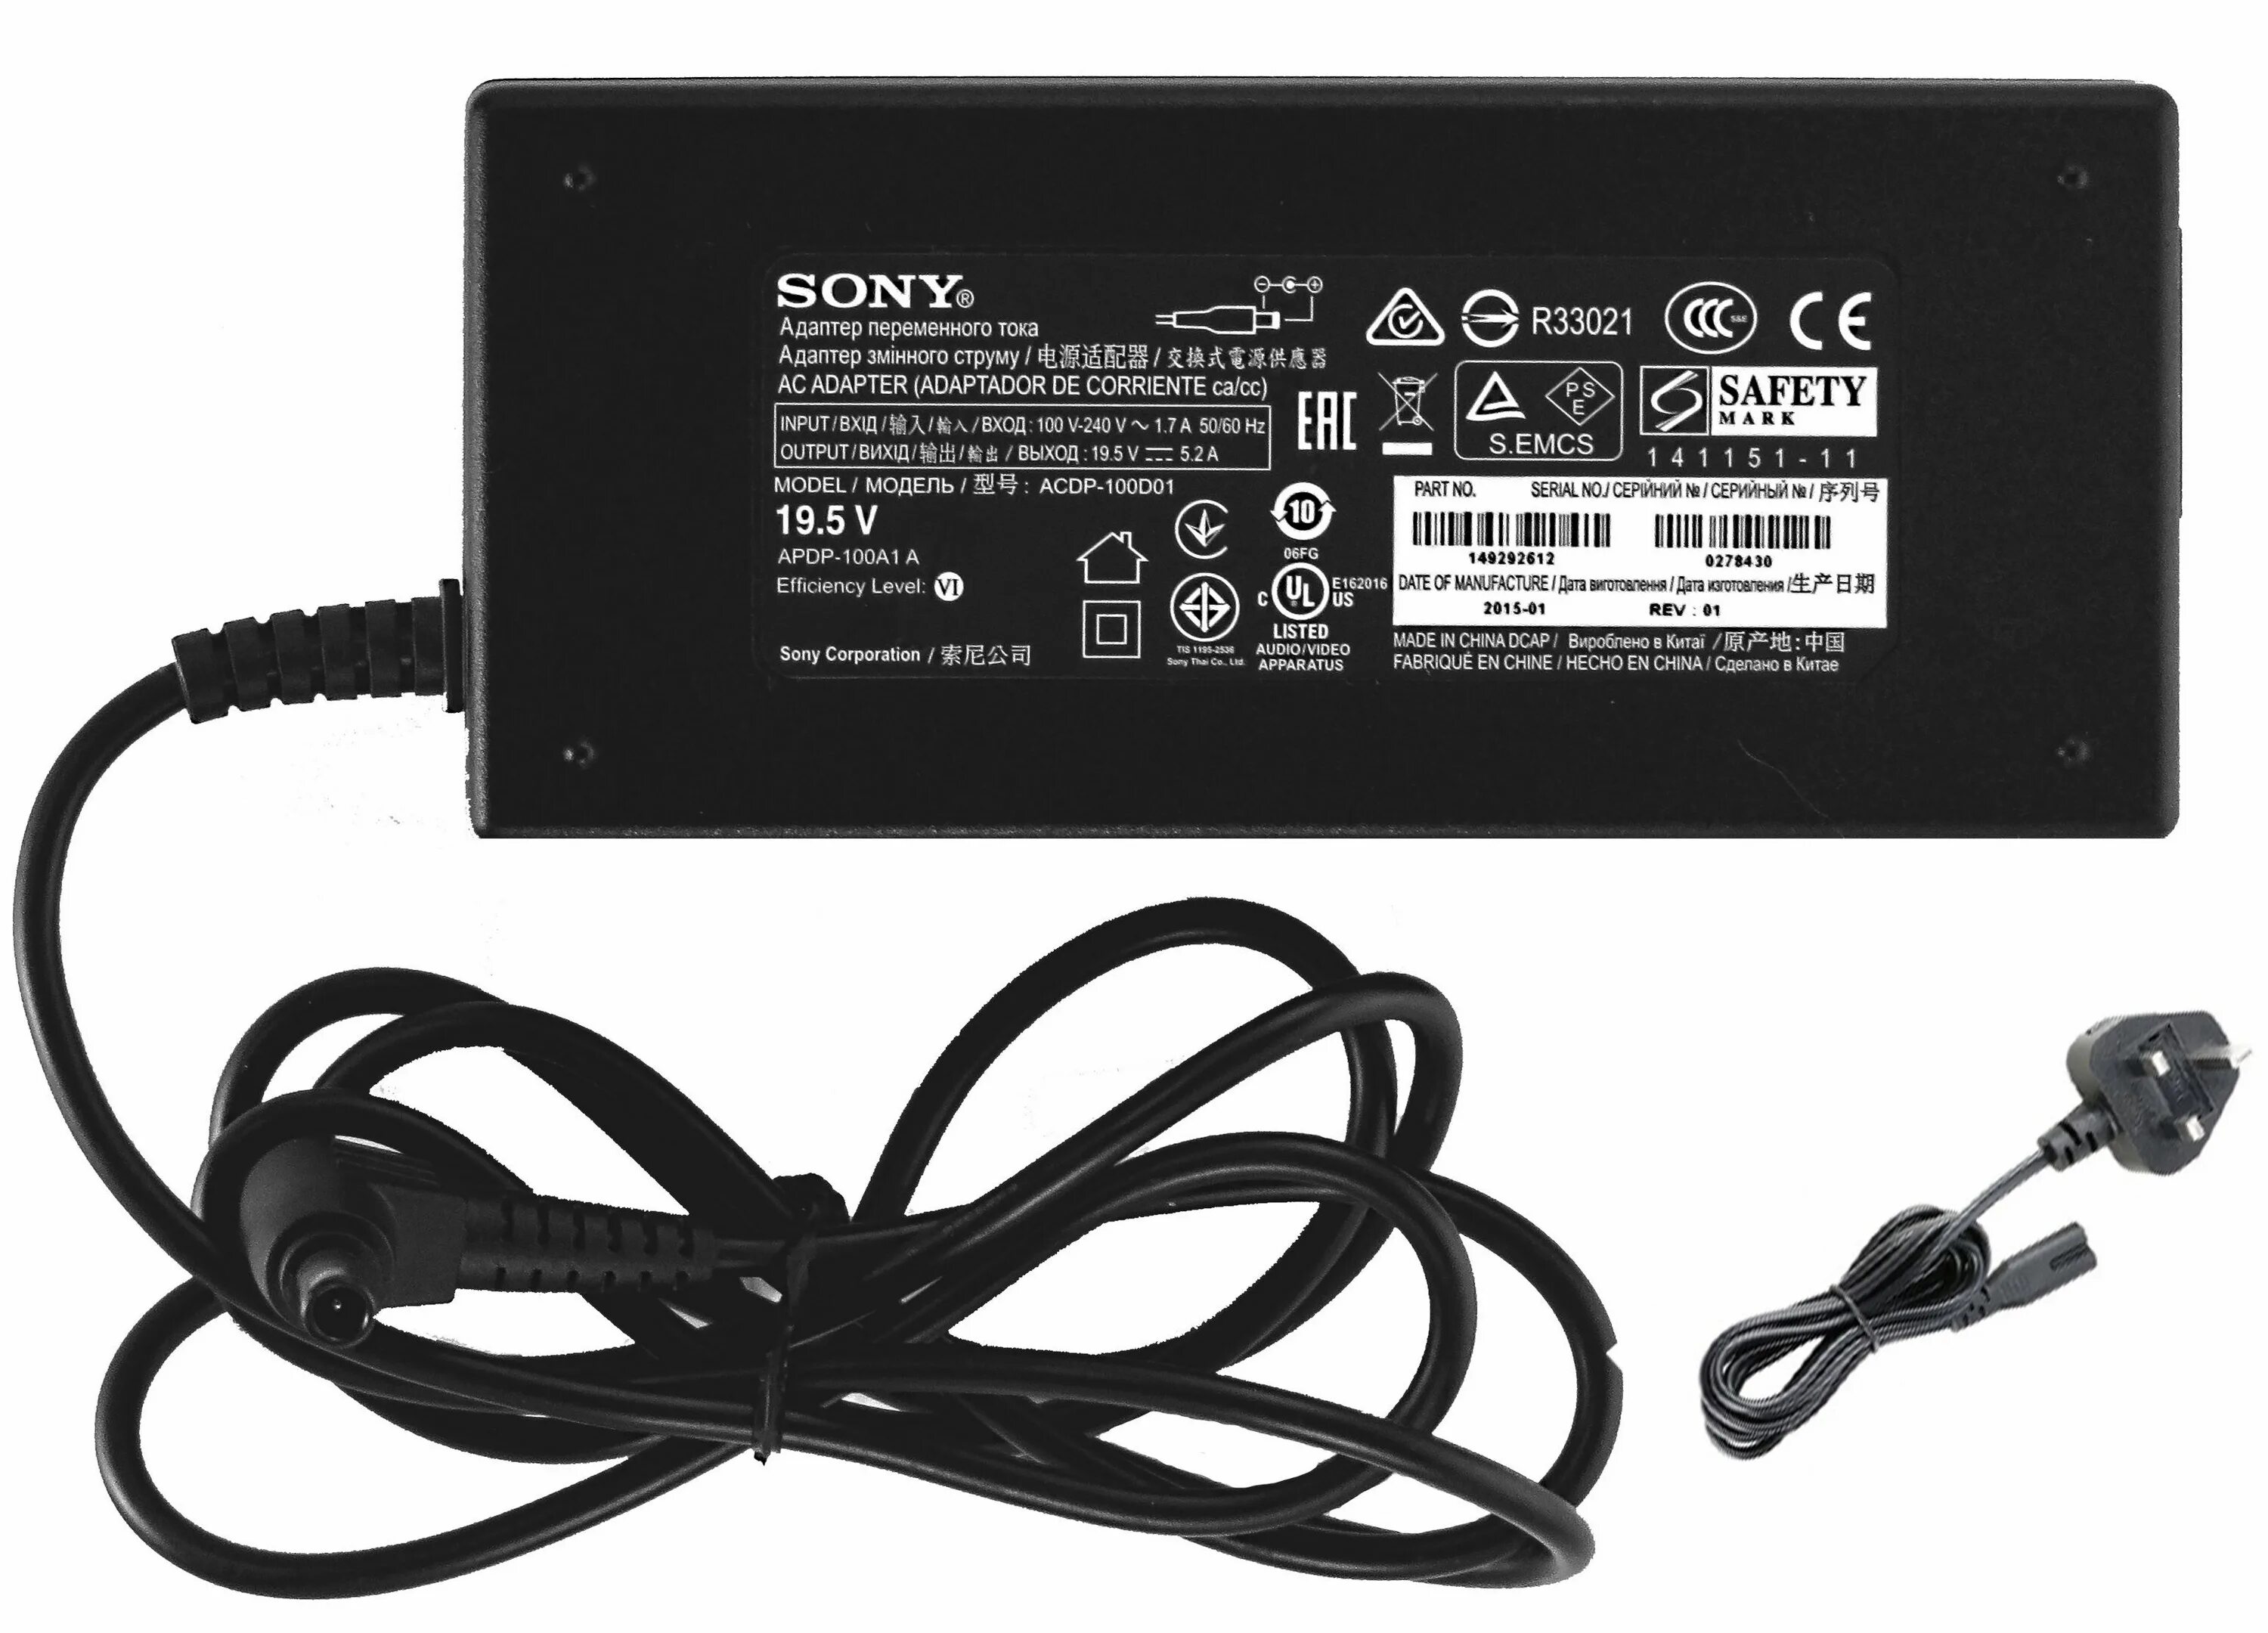 Блок питания для телевизора Sony 19.5v. Адаптер переменного тока для телевизора Sony 19.5v. Блок питания для телевизора сони 19.5 вольт. ACDP-100d01. Питание телевизора sony